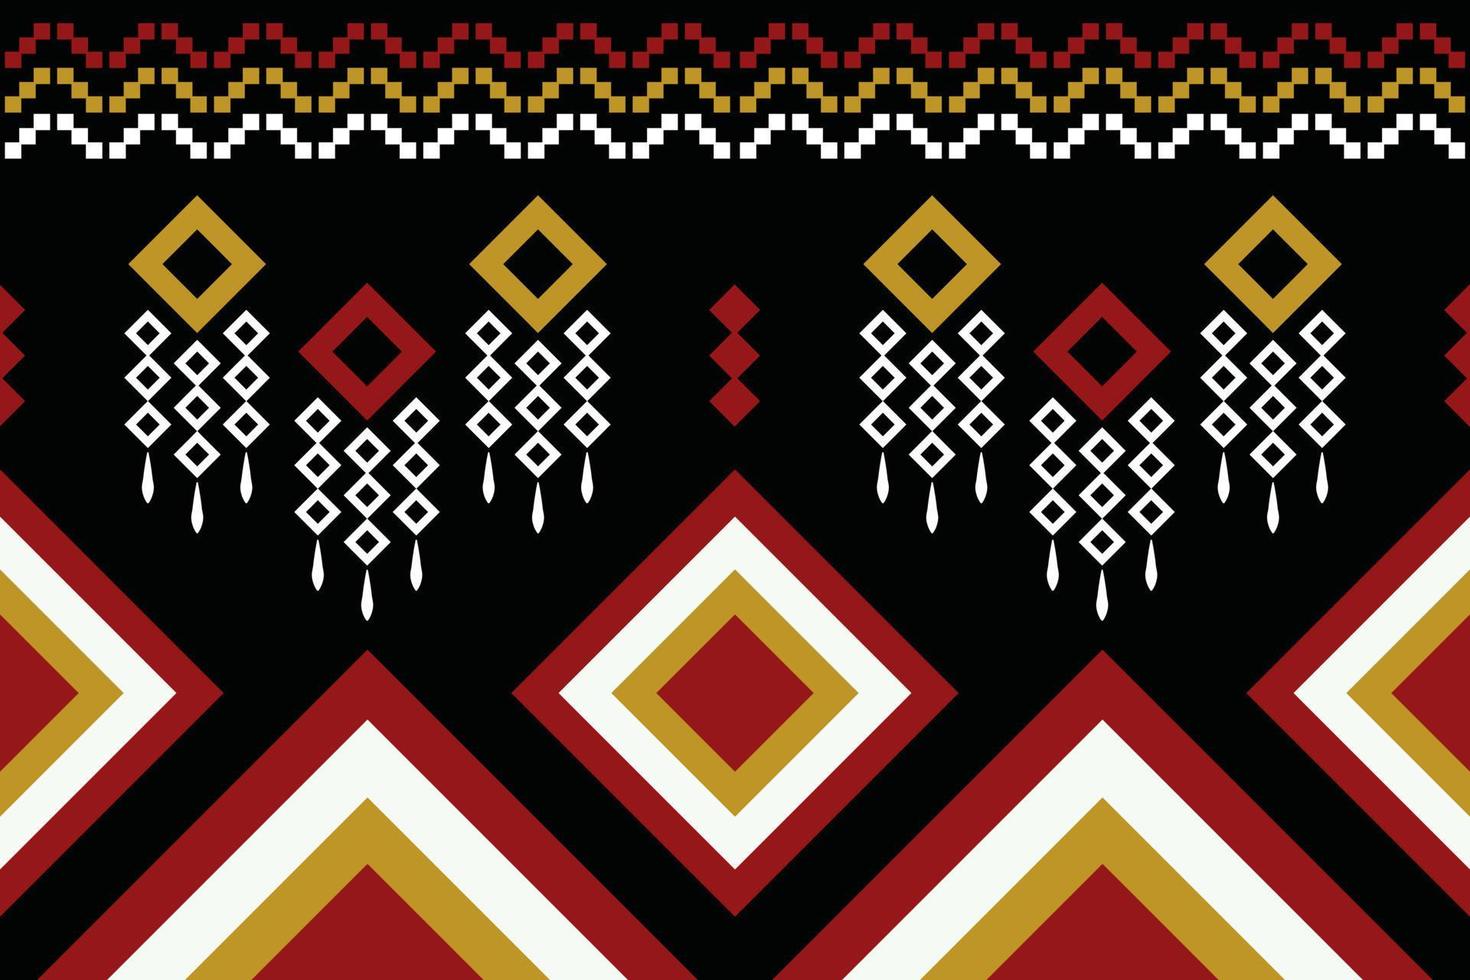 patrón de tejido étnico estilo geométrico. sarong azteca étnico oriental patrón tradicional fondo negro oscuro. resumen, vector, ilustración. uso para textura, ropa, envoltura, decoración, alfombra. vector